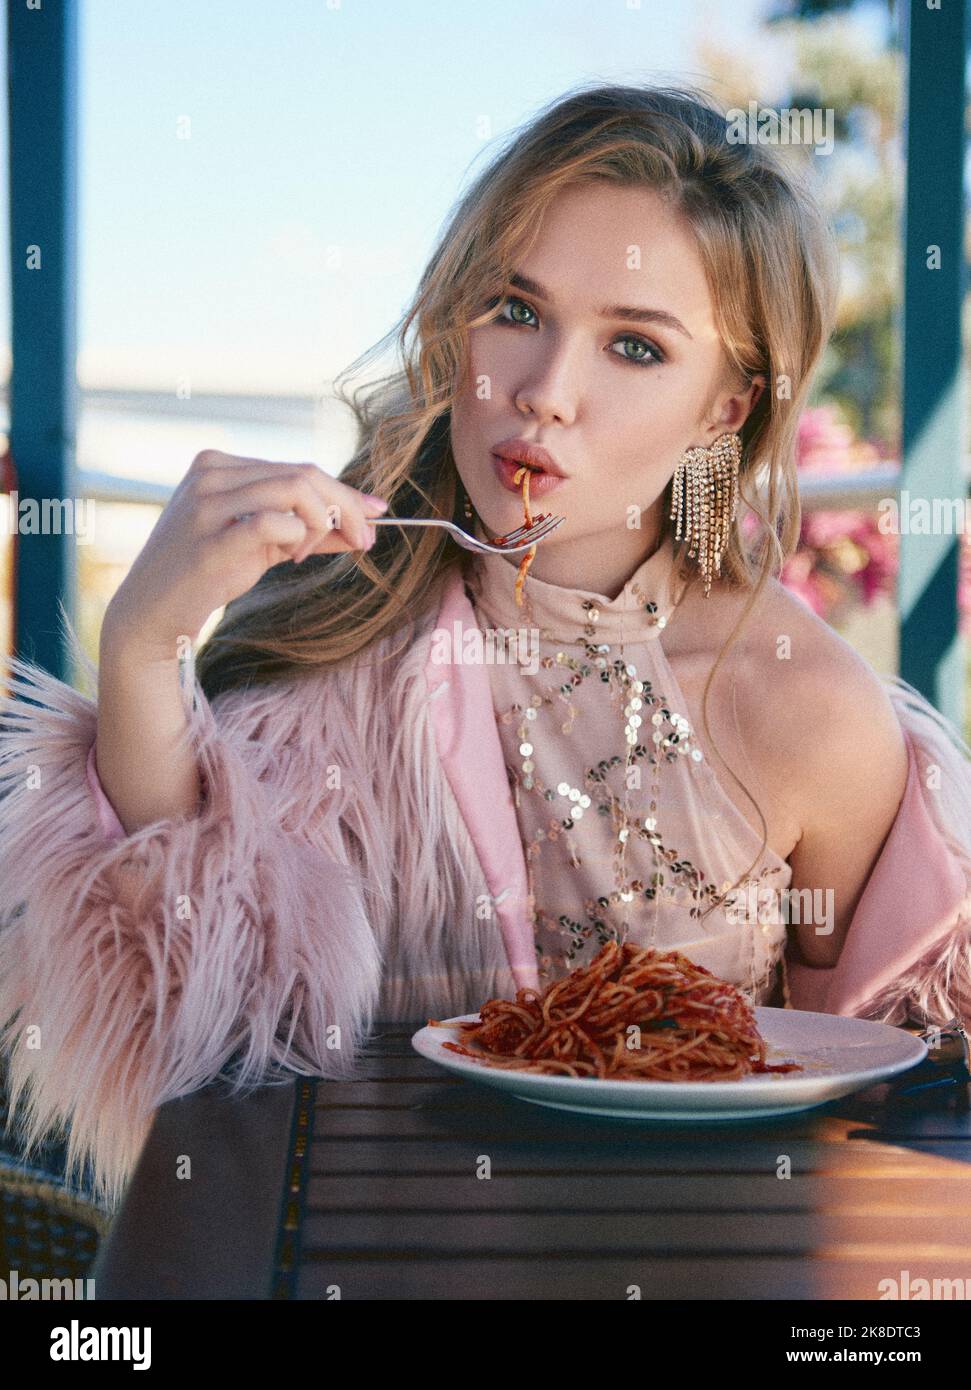 Hübsches Mädchen, das in einem Café sitzt und Pasta (Spaghetti) isst. Porträt einer stilvollen jungen Frau im Restaurant, die Kleid und Pelzmantel trägt. Film Korn effe Stockfoto